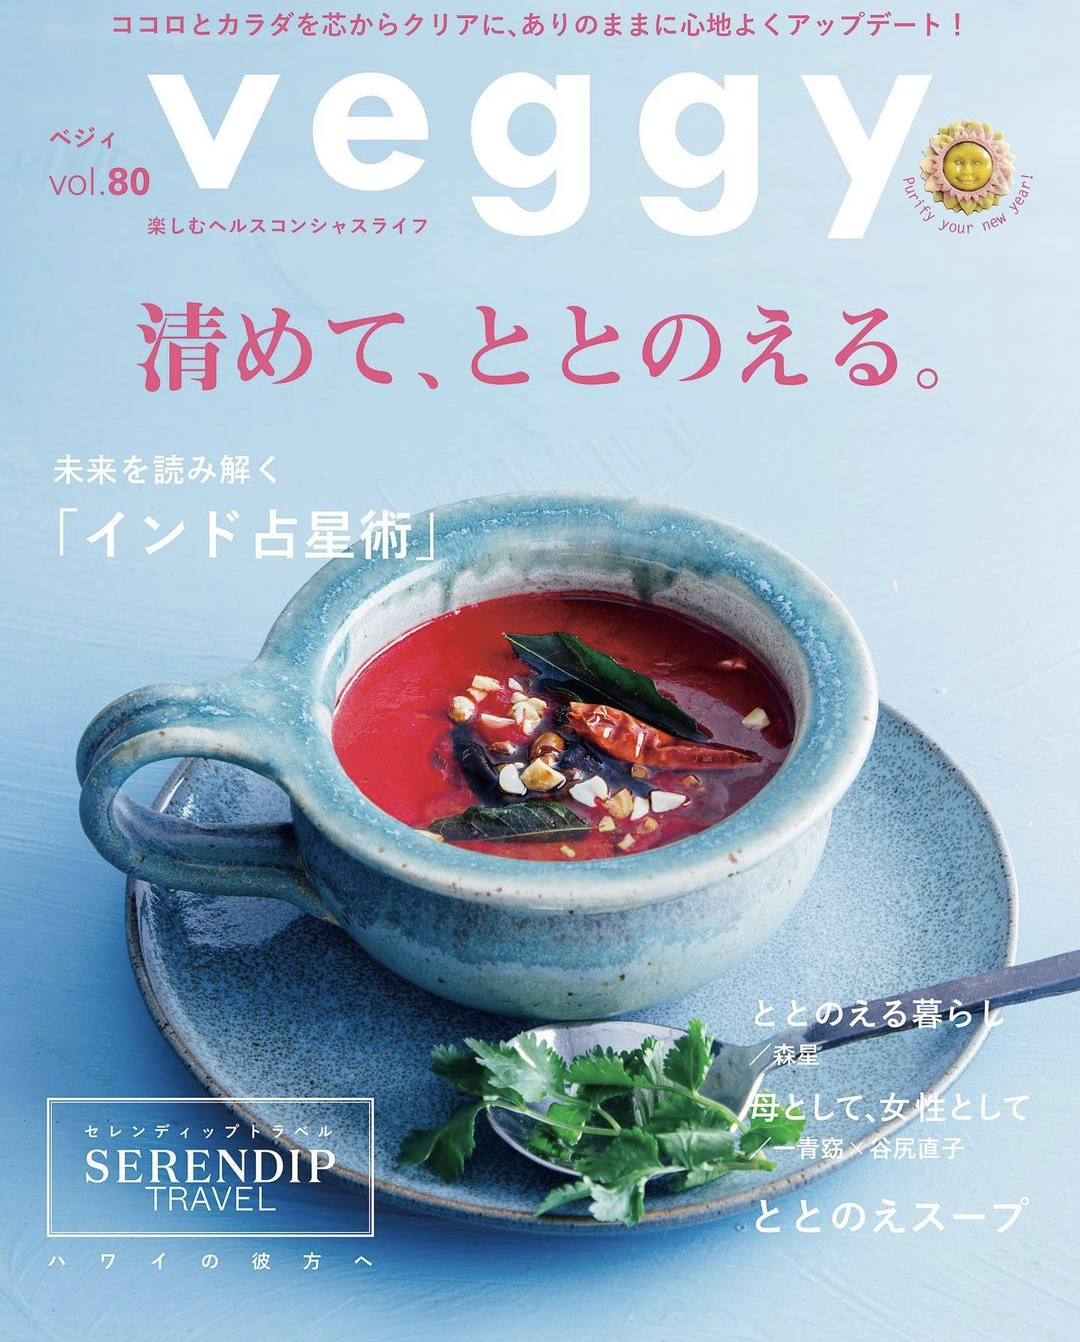 1月8日発売の最新号 『Veggy vol.80。』に掲載*.°